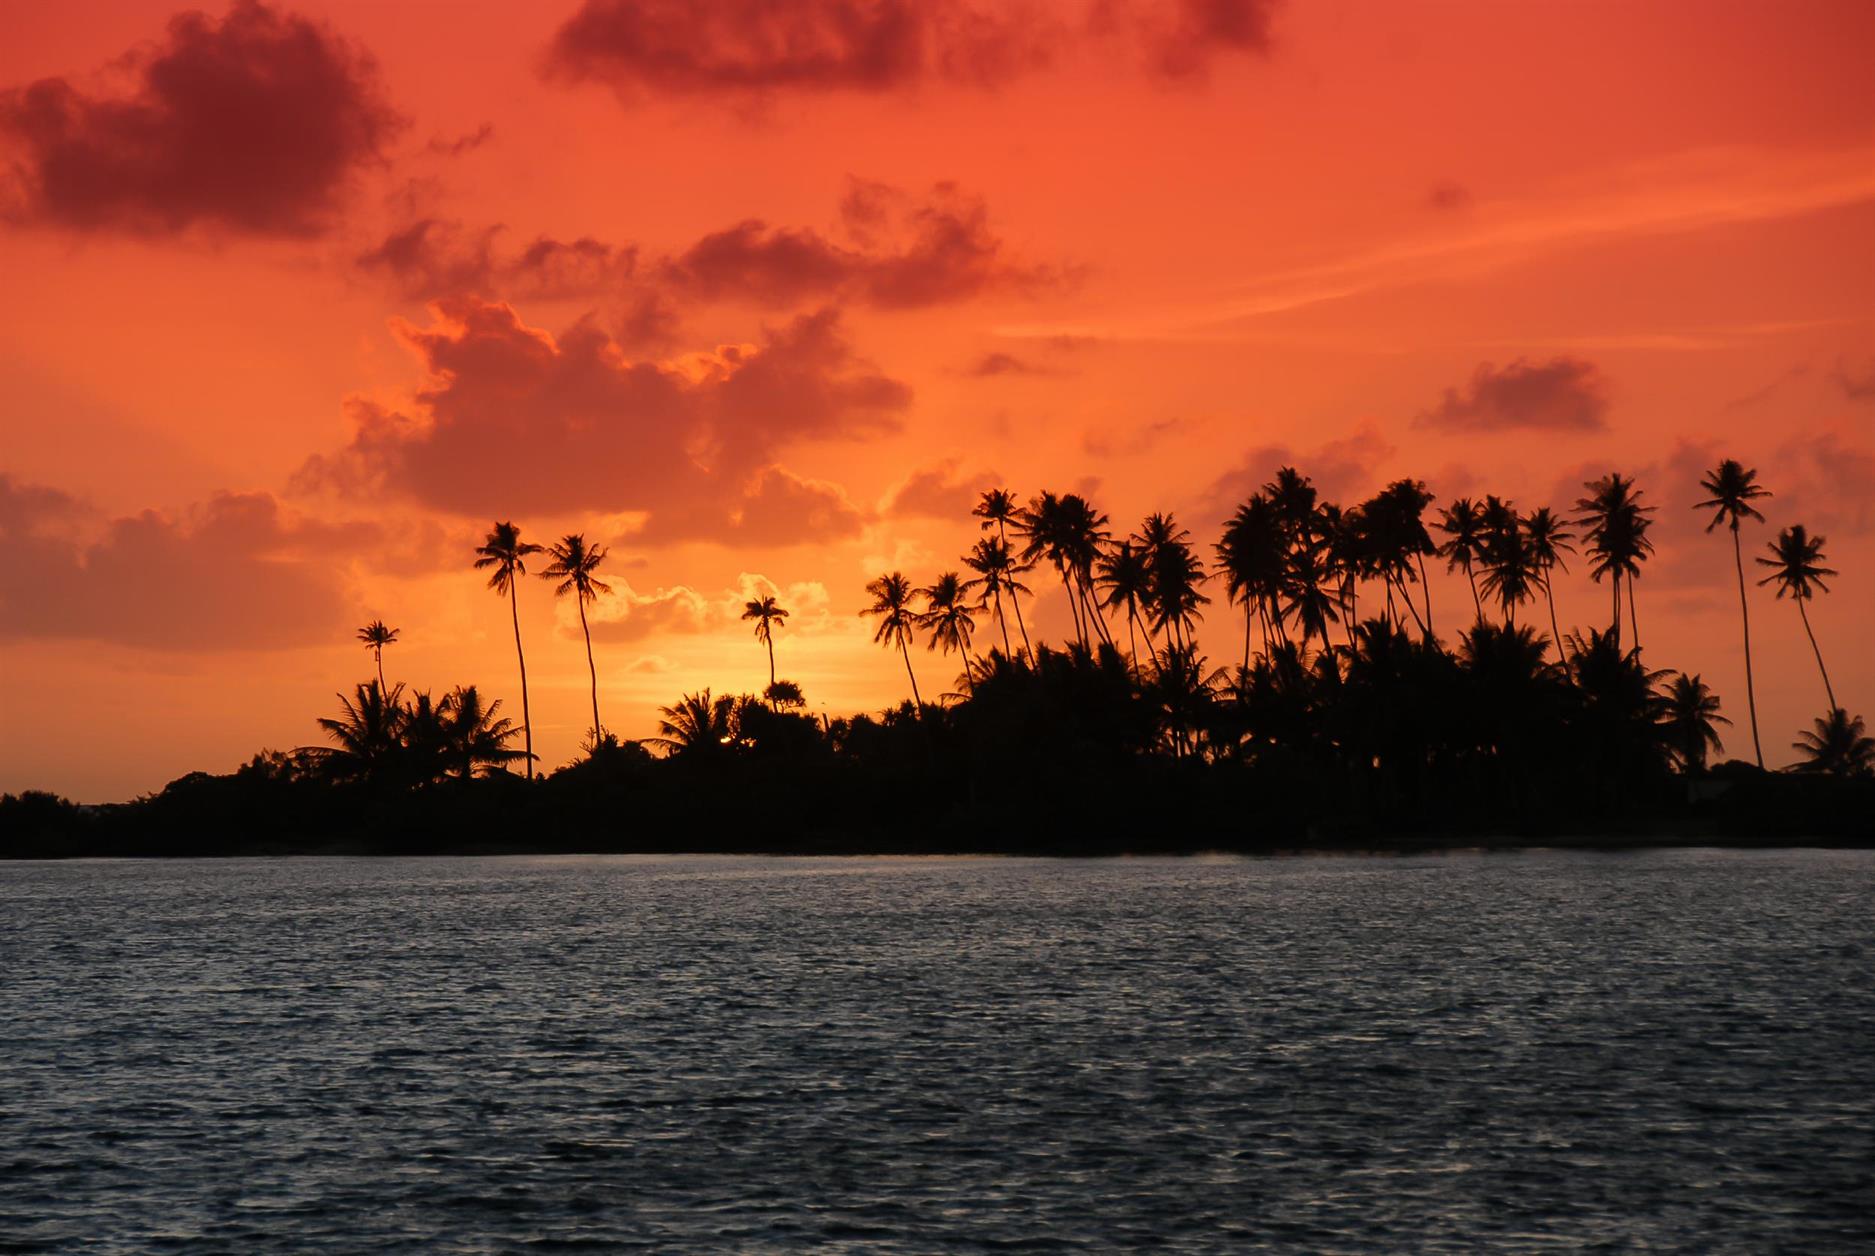 Naturschauspiel "Sonnenuntergang" in Penrhyn, die ganze Insel wird in rote Farbe getaucht. Penrhyn (auch als Tongareva bekannt) ist die nördlichste Insel der Cook Islands und hat eine Fläche von 10 km² und ca. 600 Einwohner.